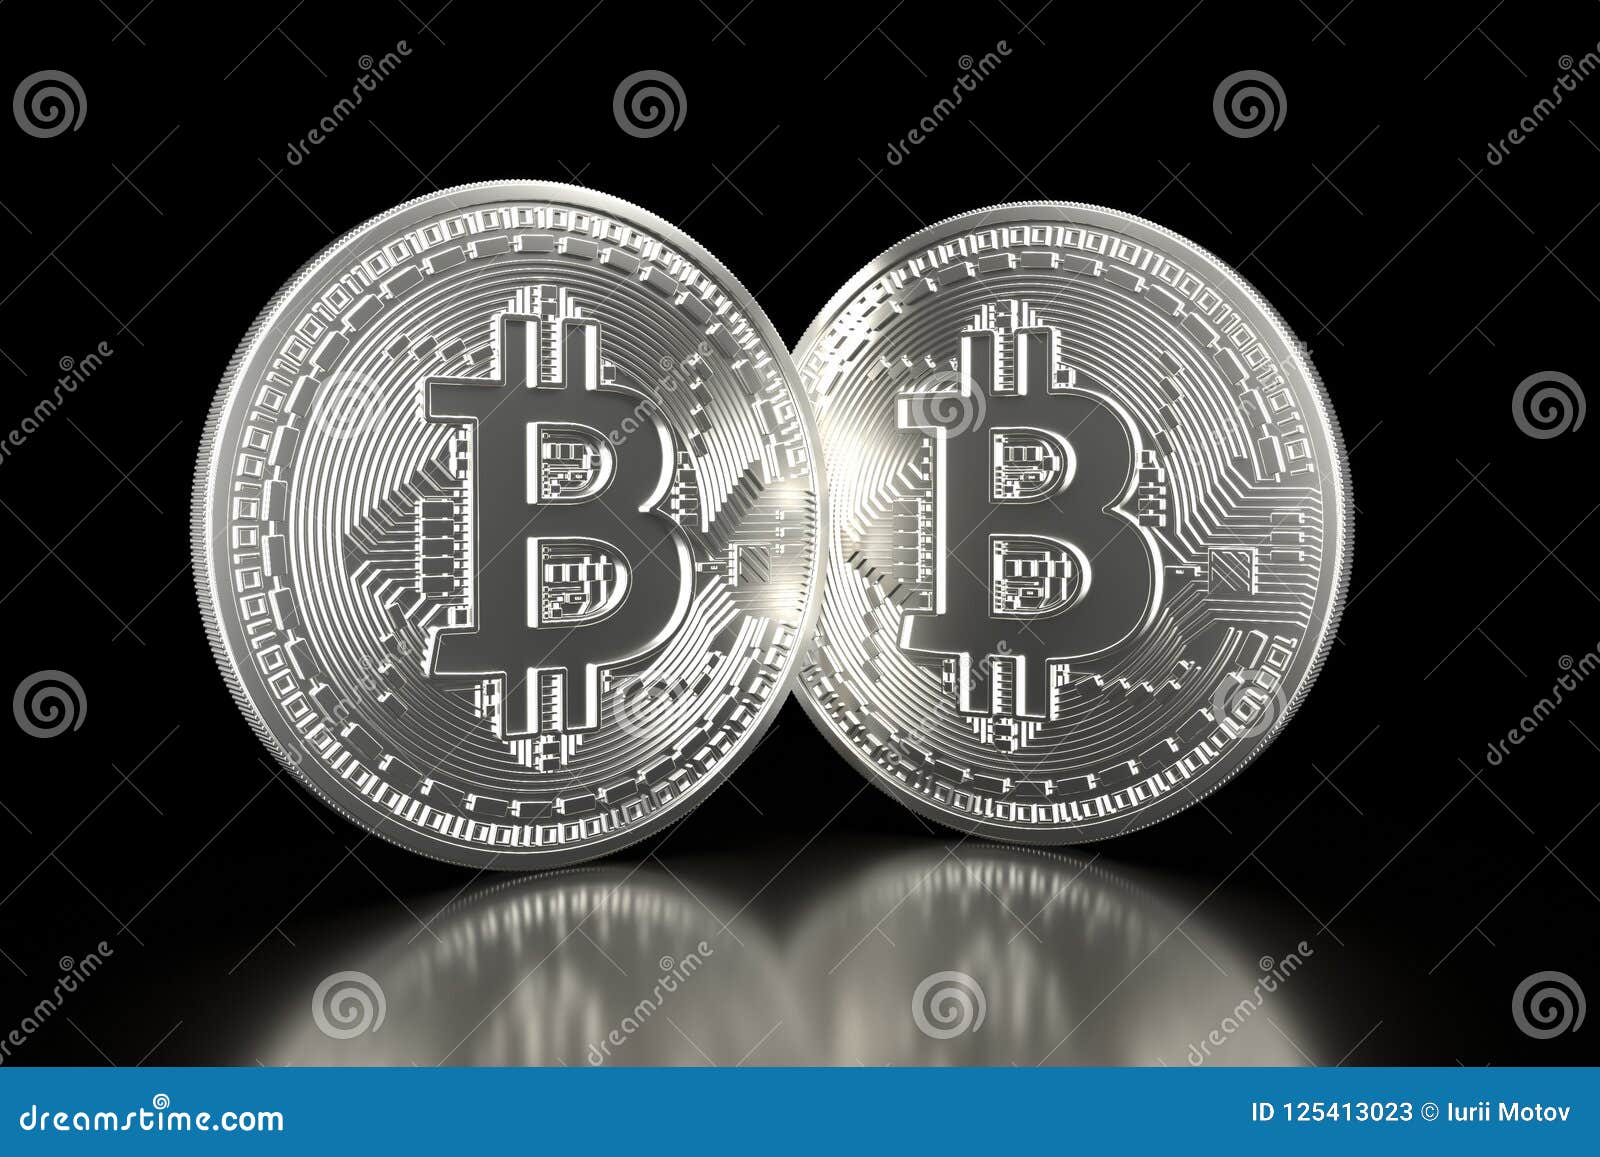 bitcoin plata)